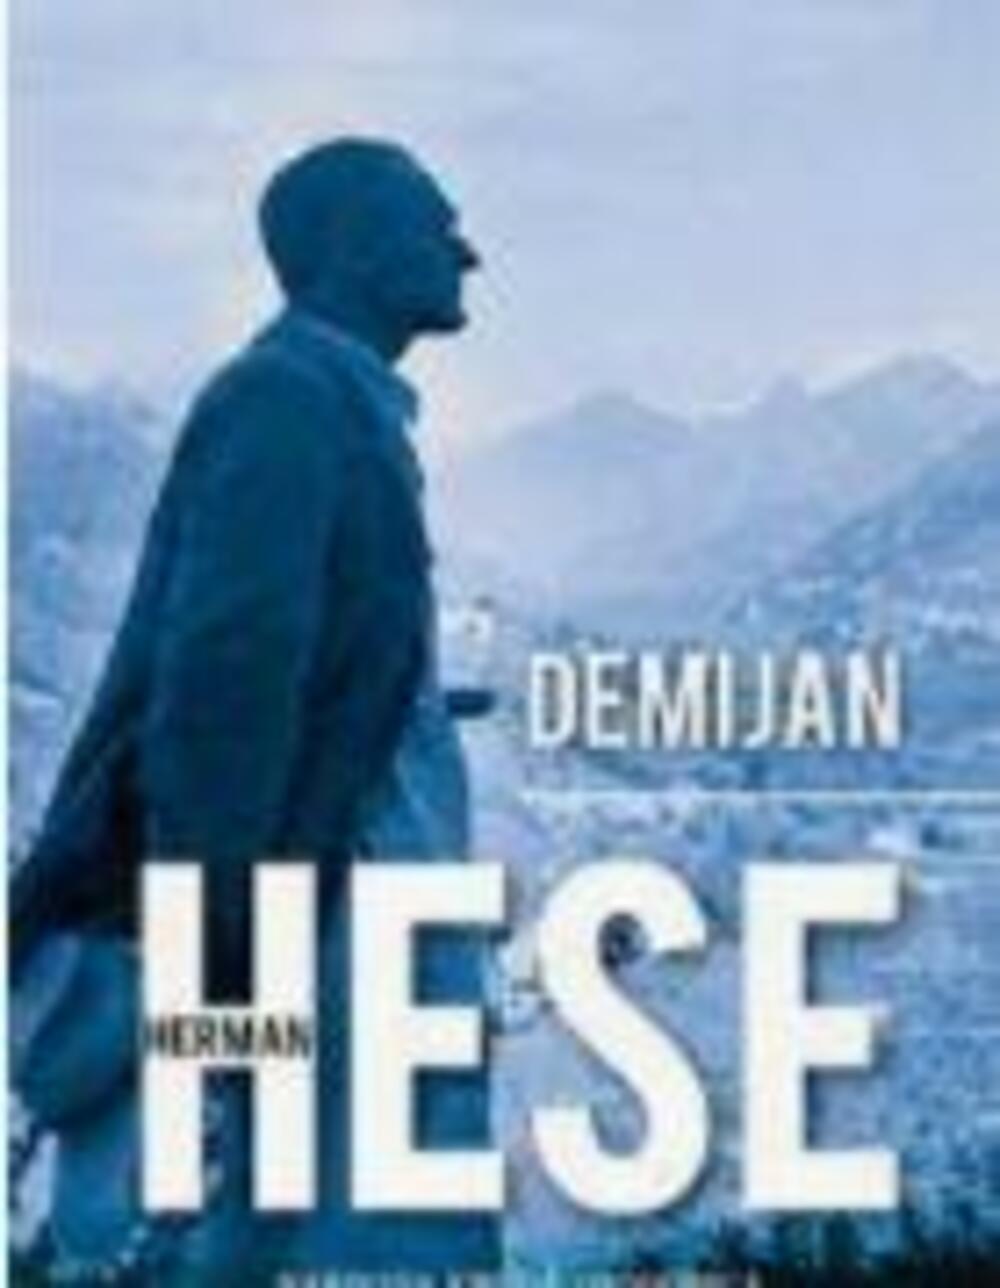 Herman Hese